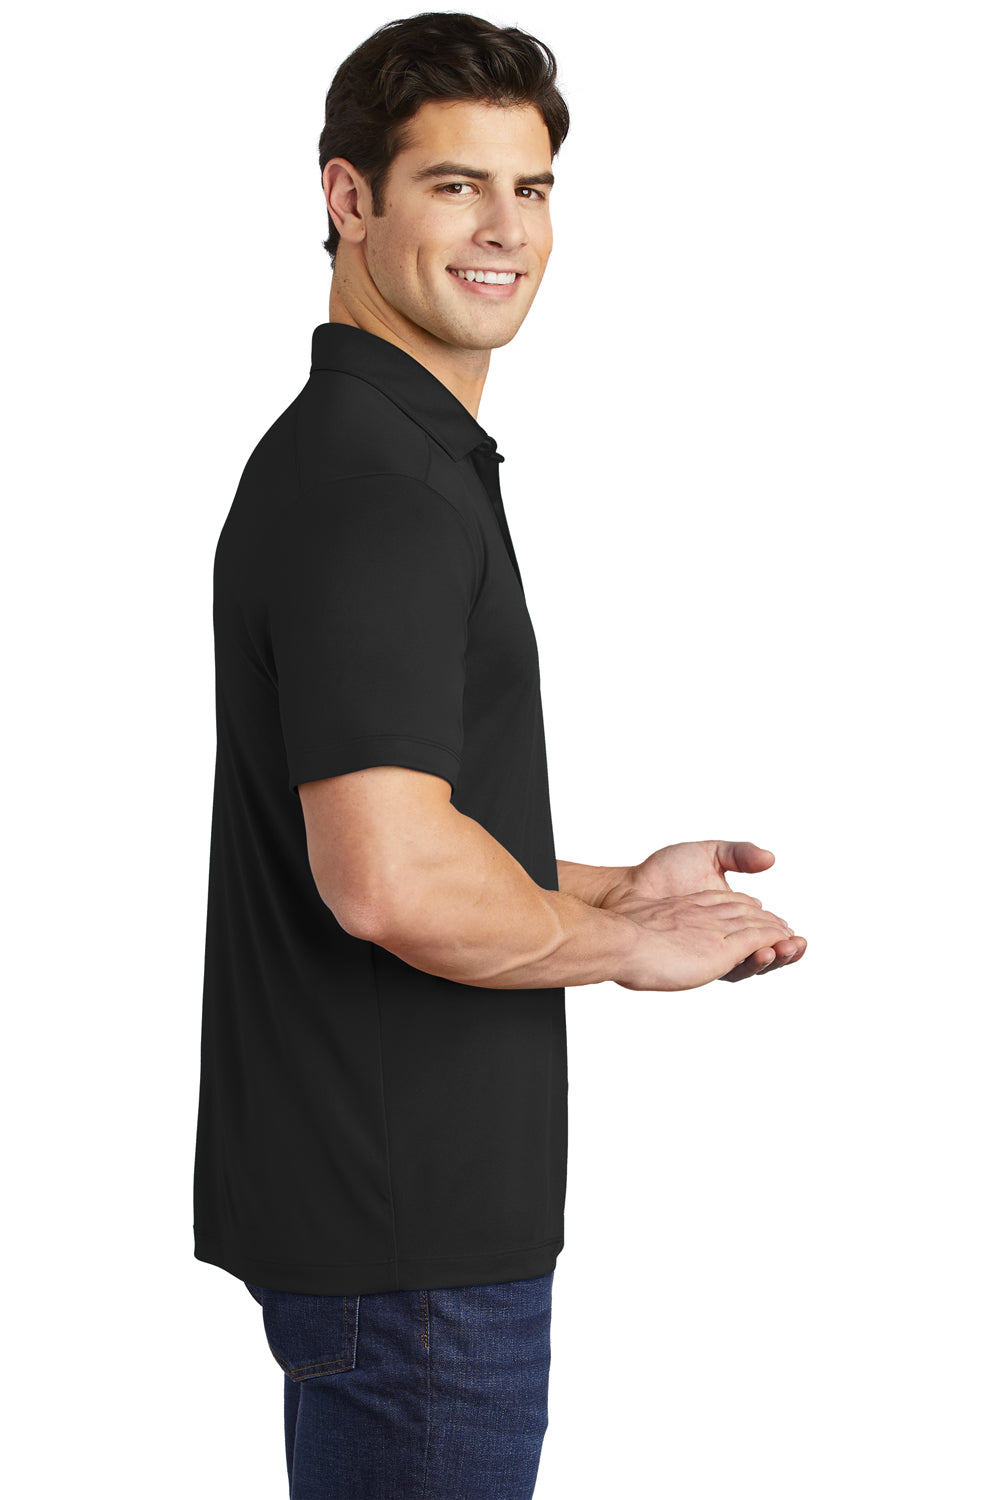 Sport-Tek Mens Short Sleeve Polo Shirt Black Side